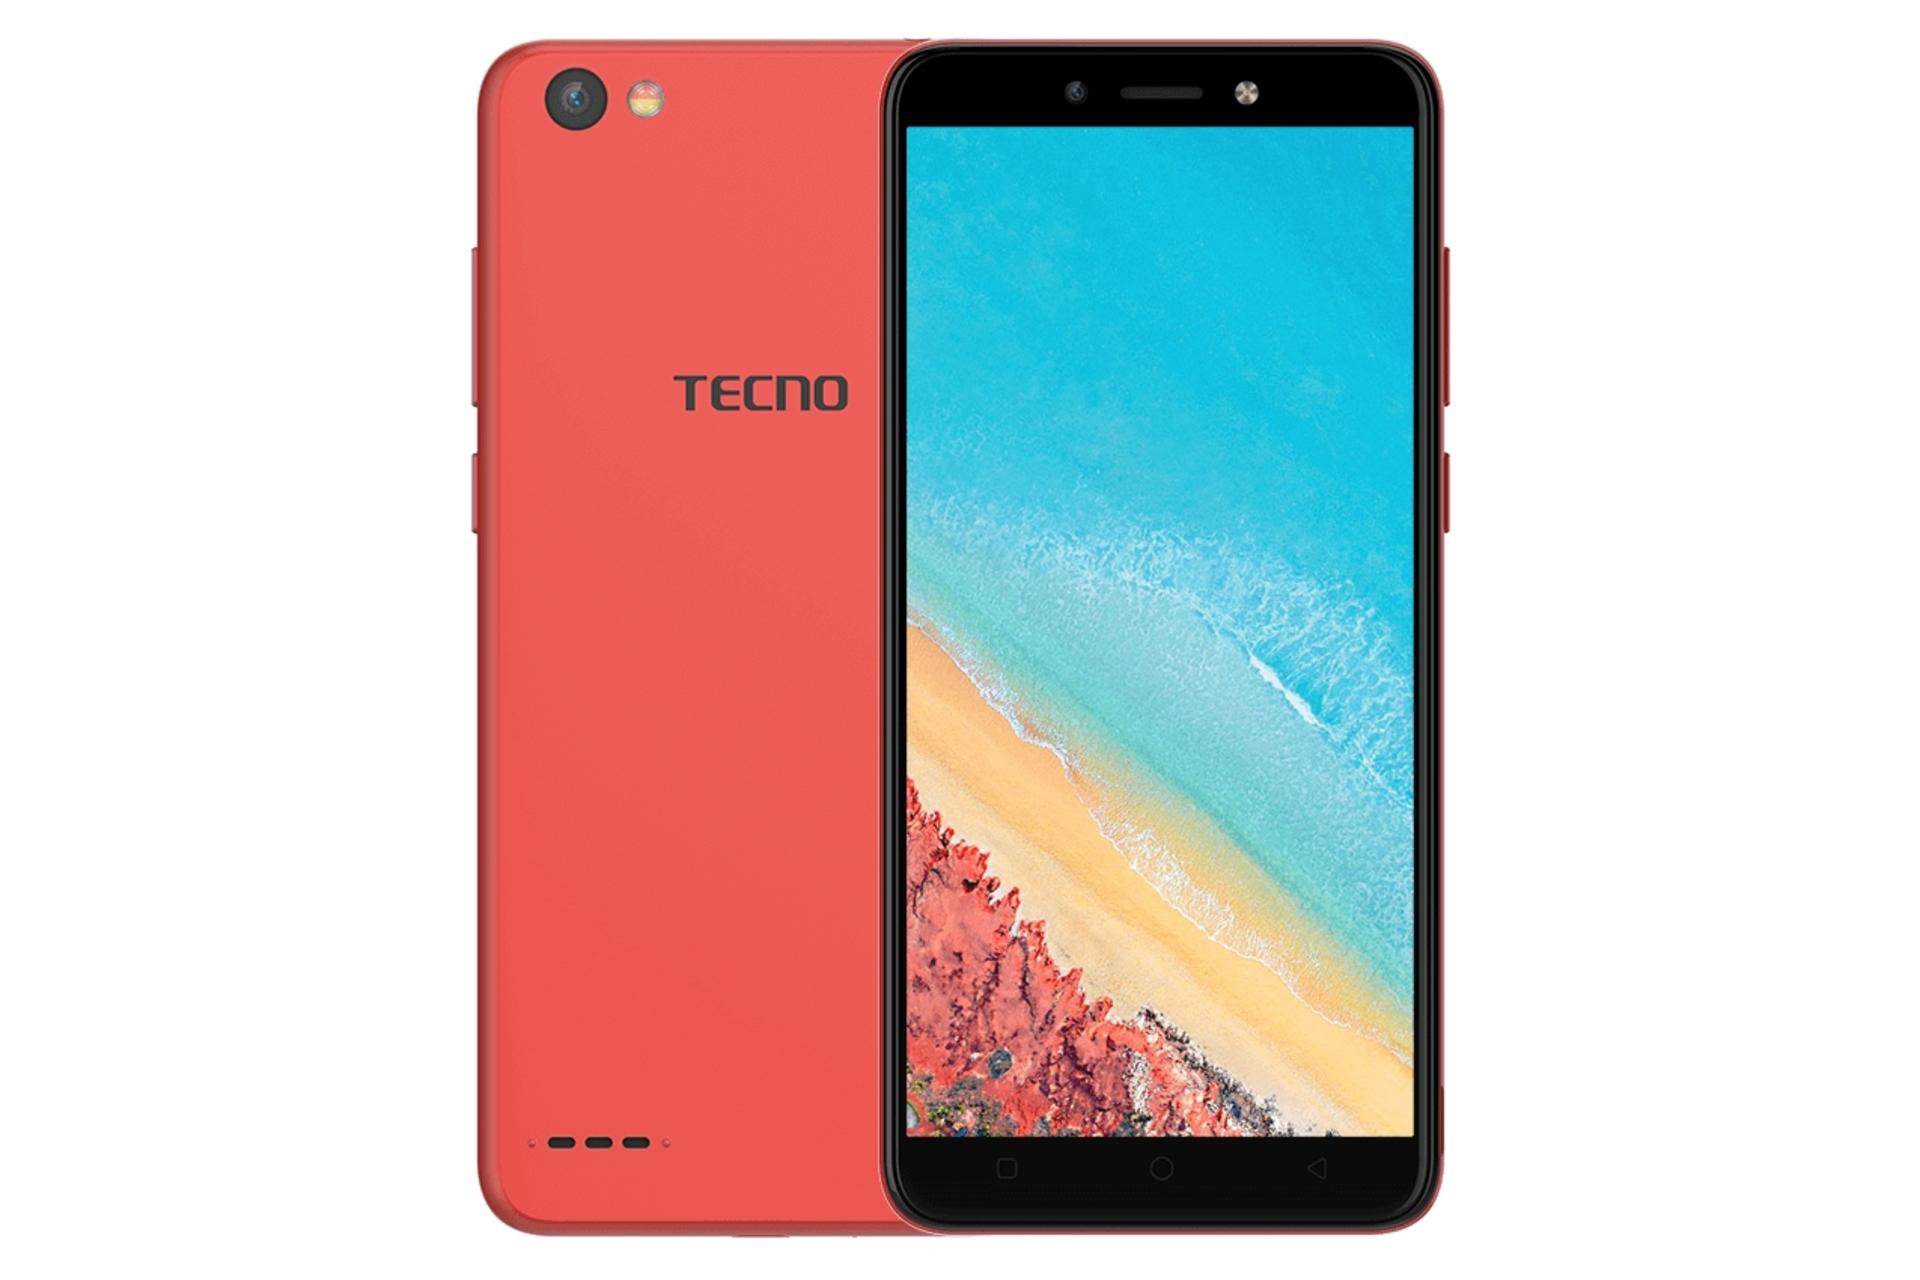 گوشی موبایل پاپ 1 پرو تکنو Tecno Pop 1 Pro قرمز